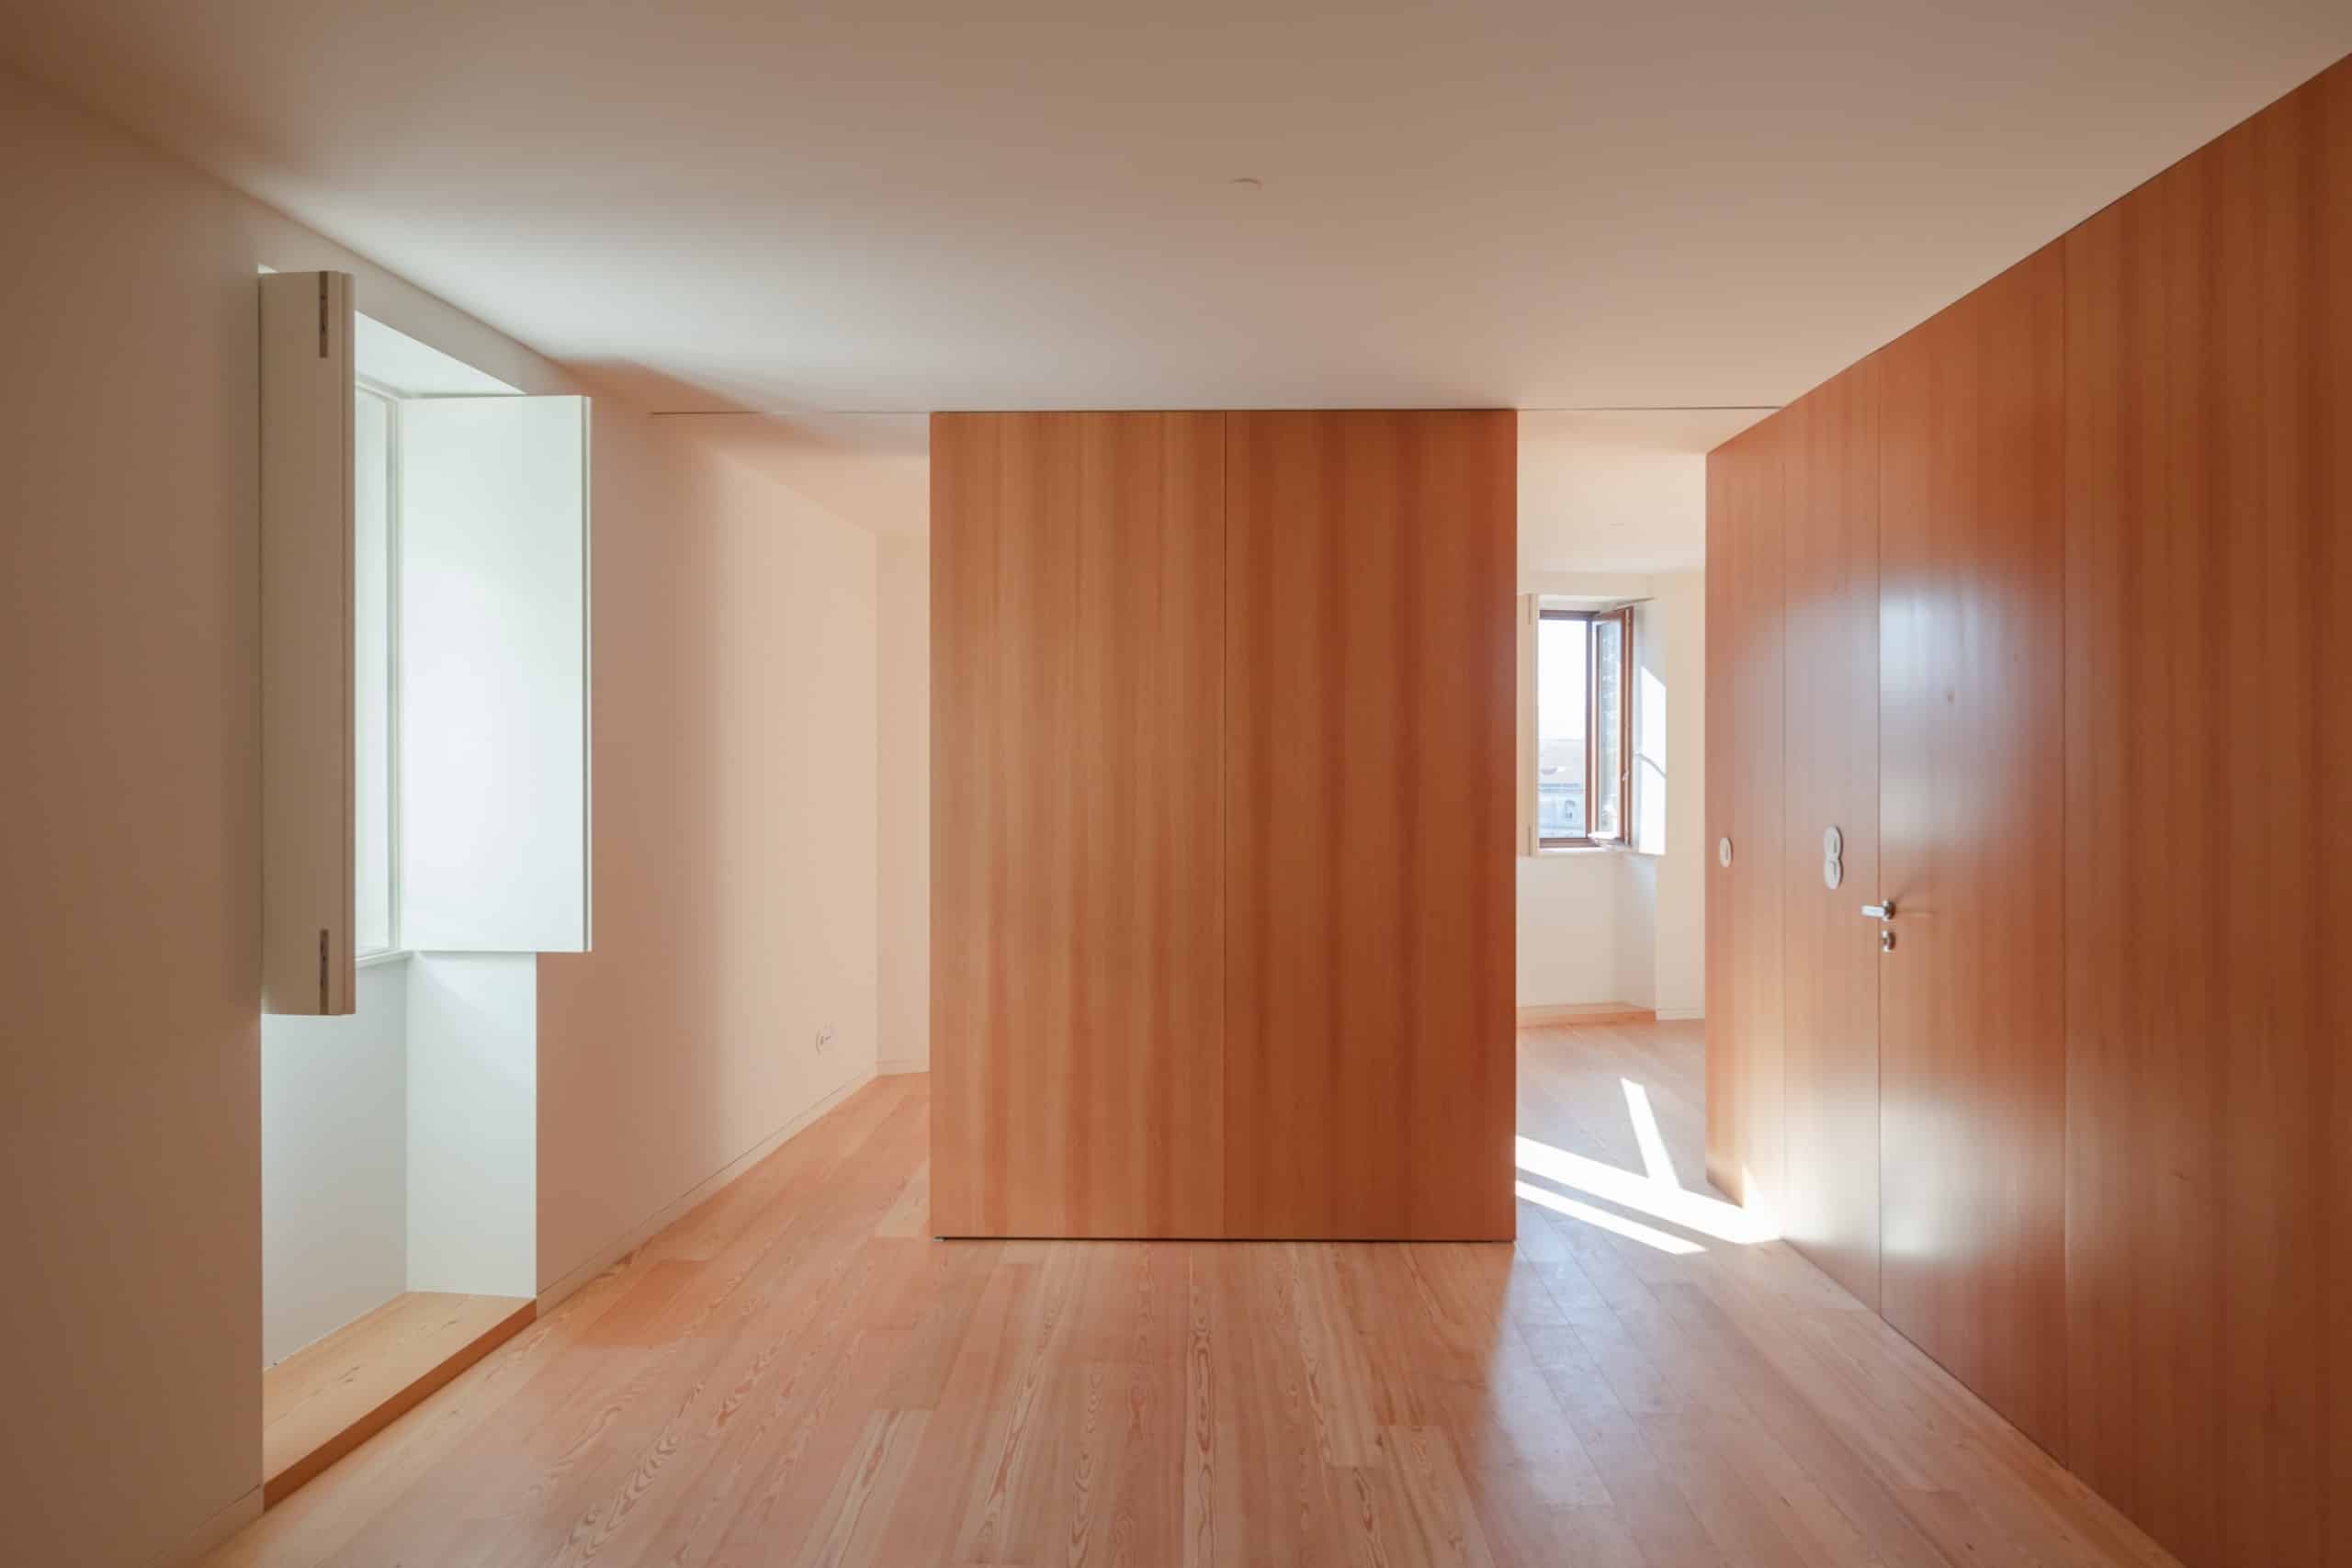 Nicht nur außen, sondern auch innen spielt Holz eine große Rolle bei der Gestaltung. Die Farbe erinnert an die rötlichen Dachziegel. Foto: © OODA